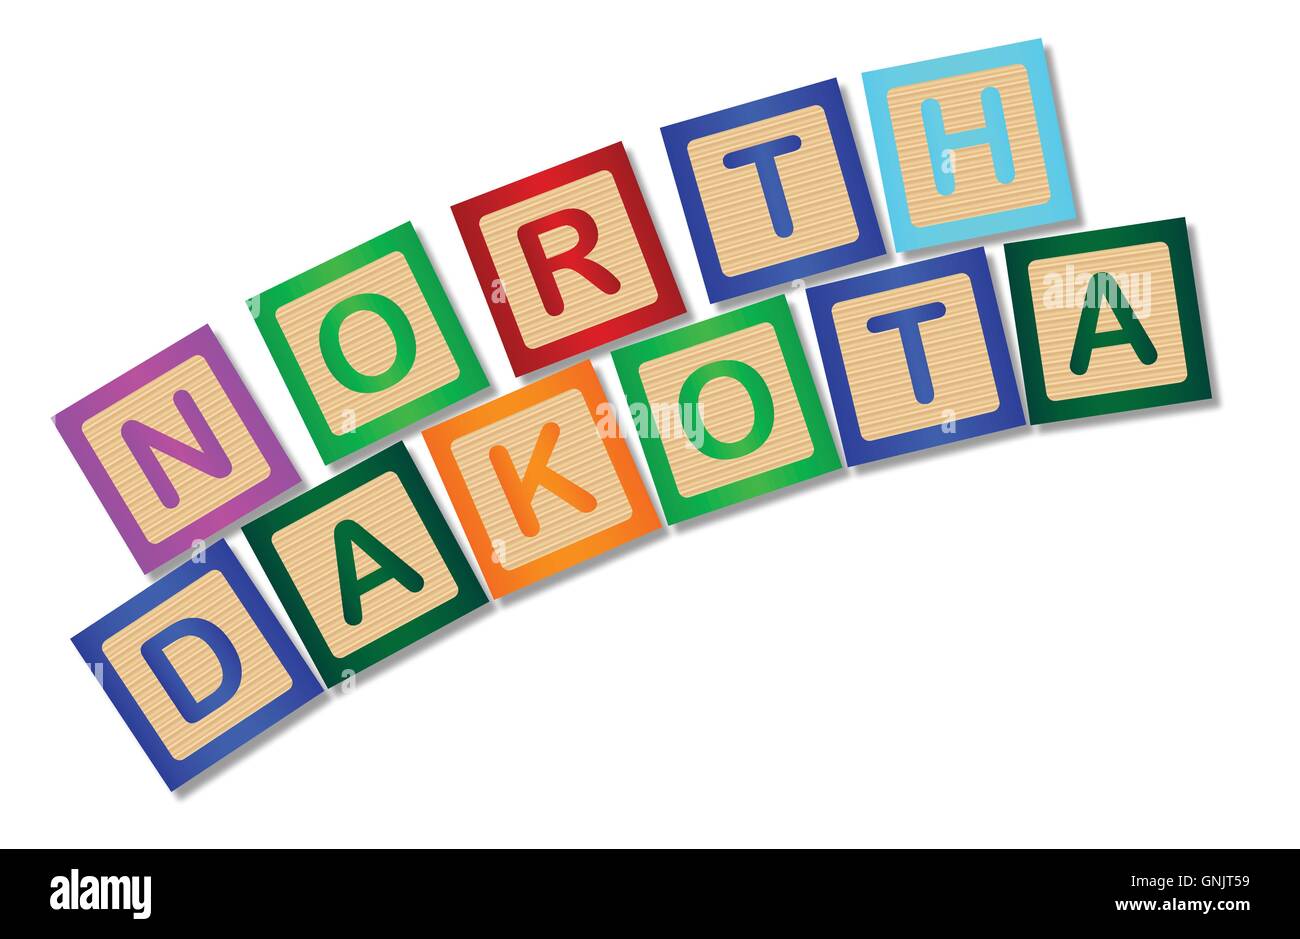 North Dakota Wooden Block Letters Stock Vector